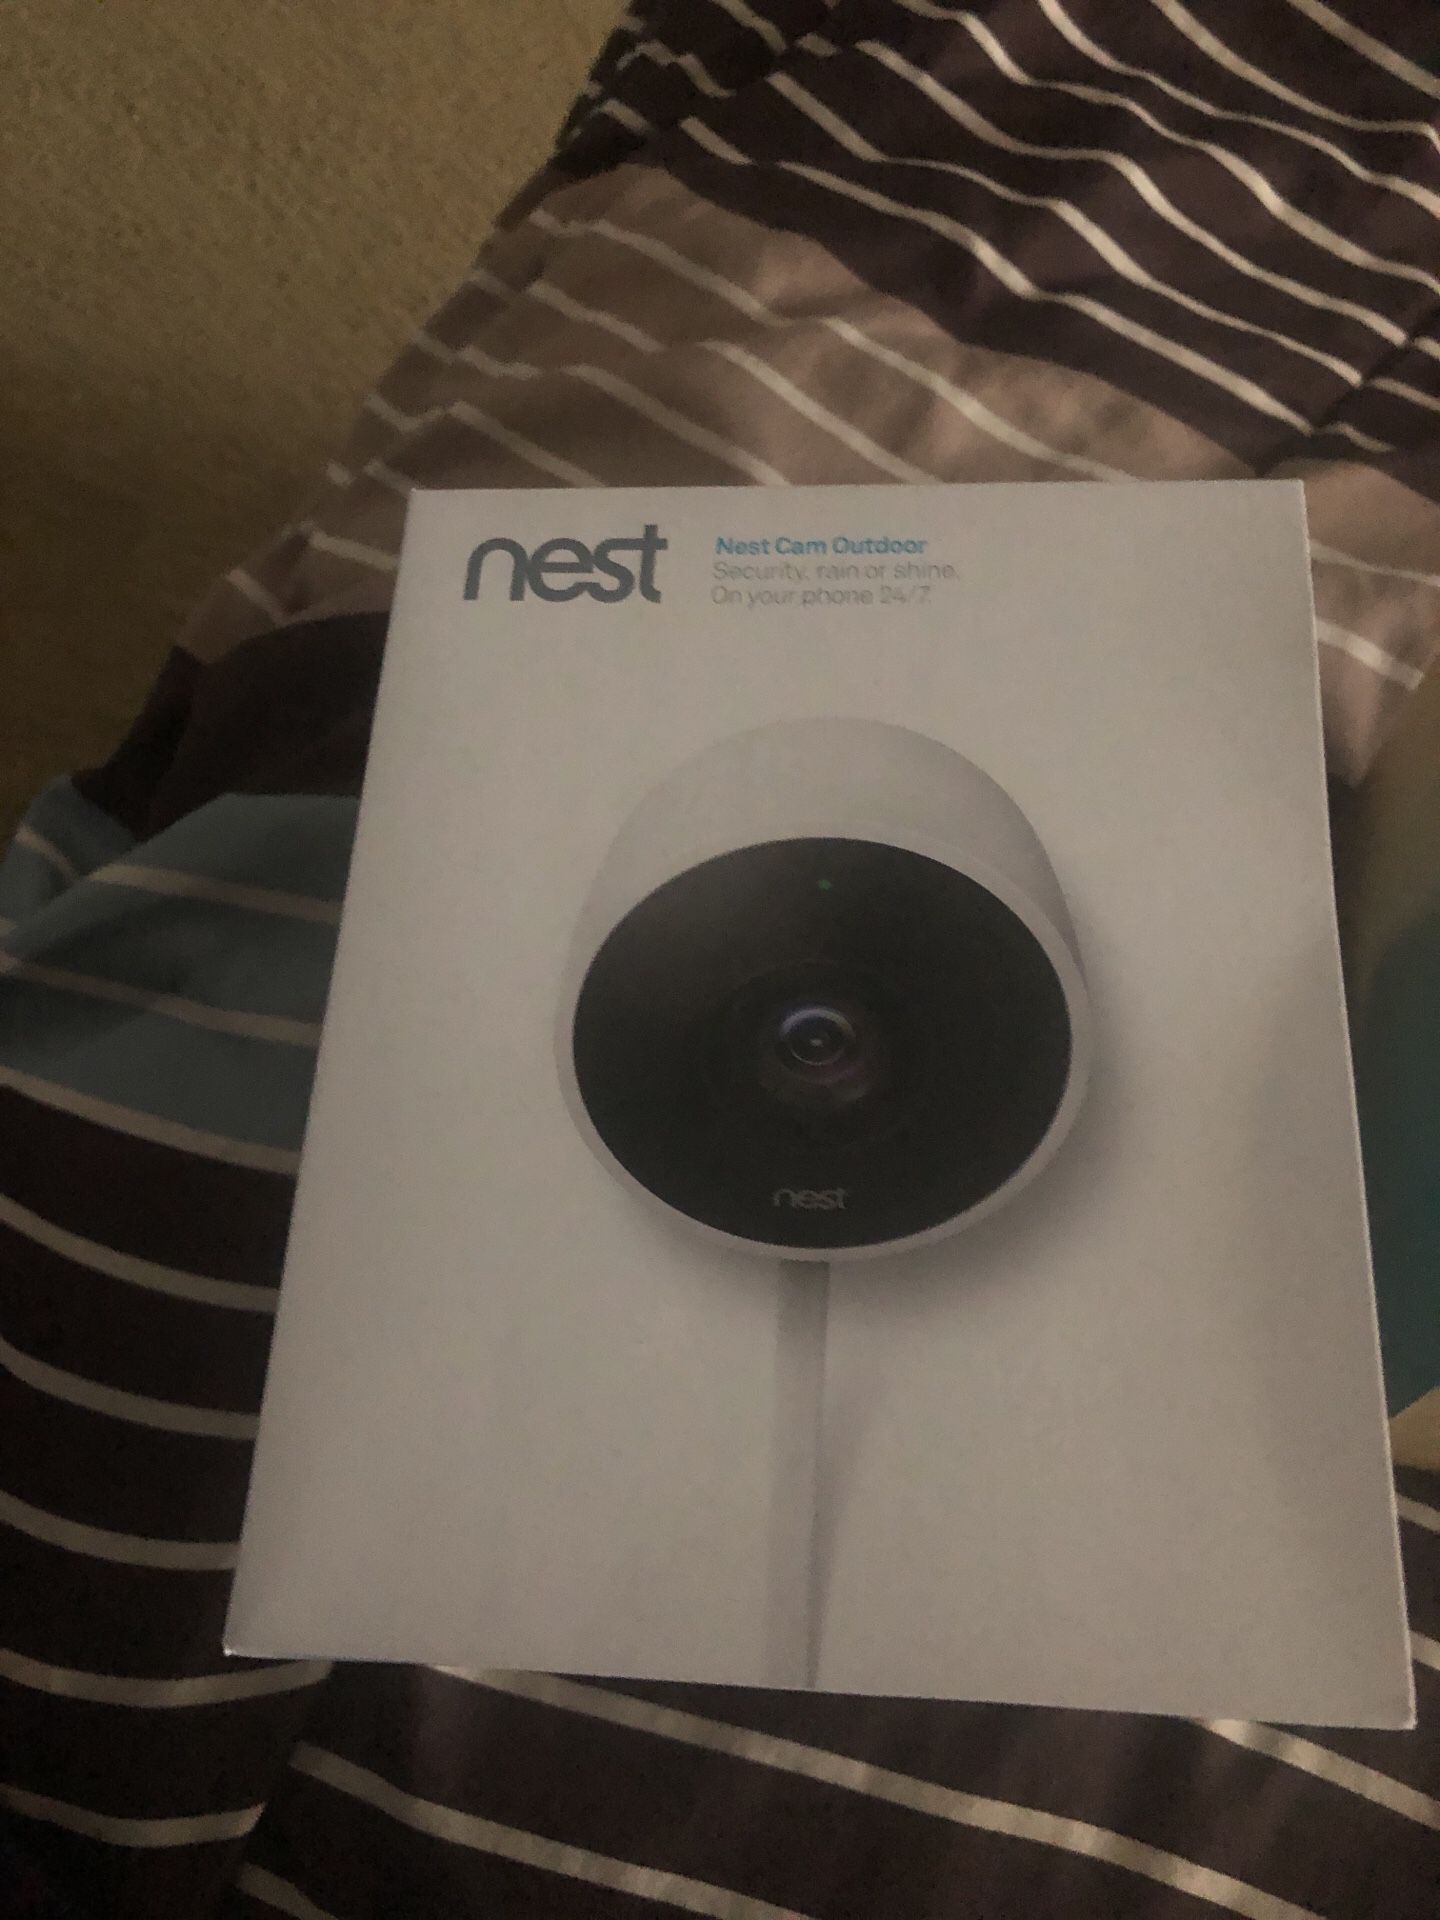 Nest smart camera